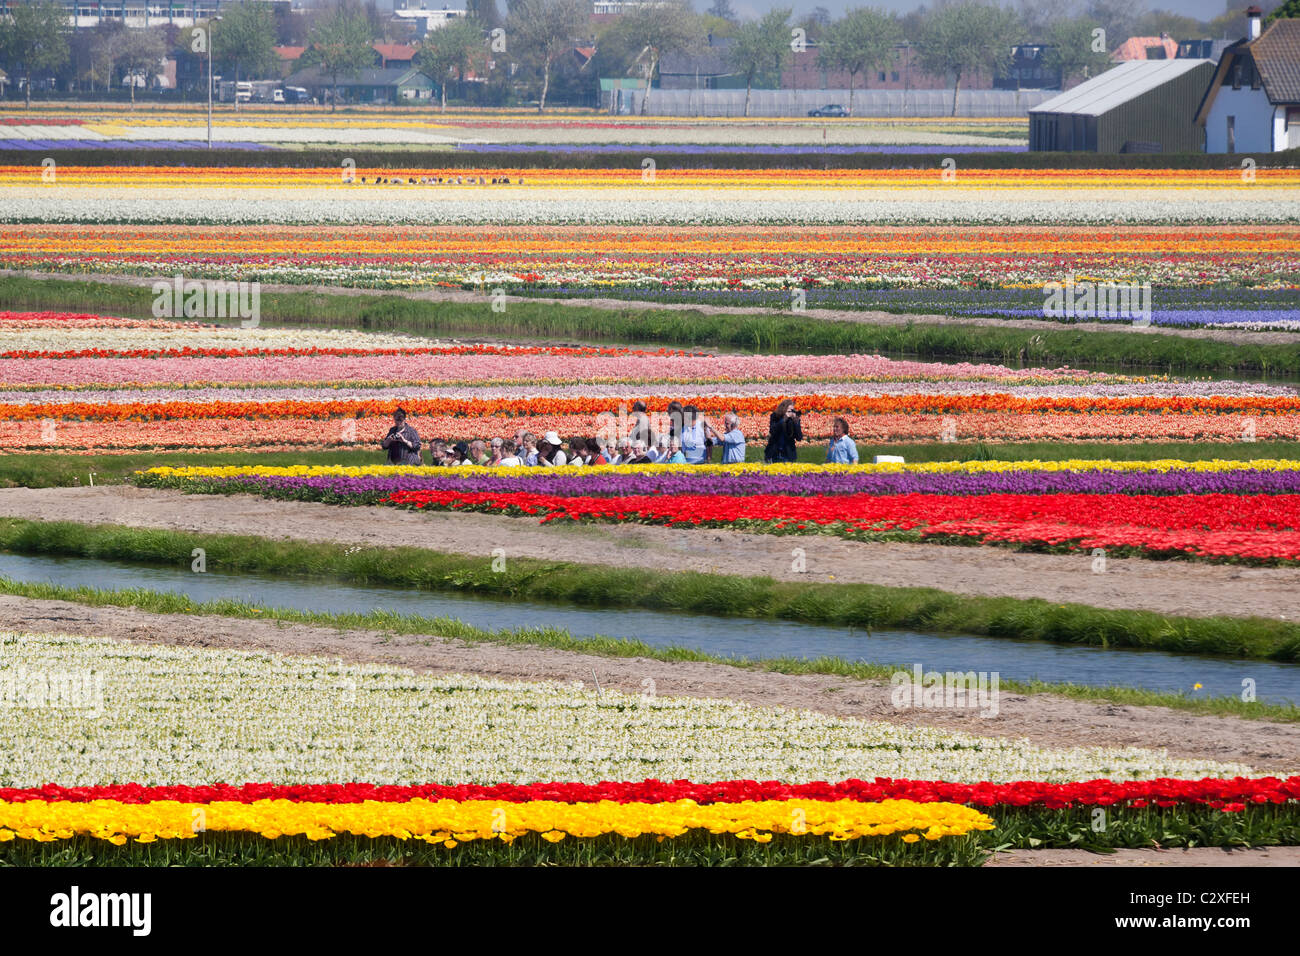 Il Keukenhof Flower Garden in Lisse, Olanda. I visitatori di prendere un viaggio attraverso la fioritura campi di tulipani da elettrico alimentato barca. Foto Stock